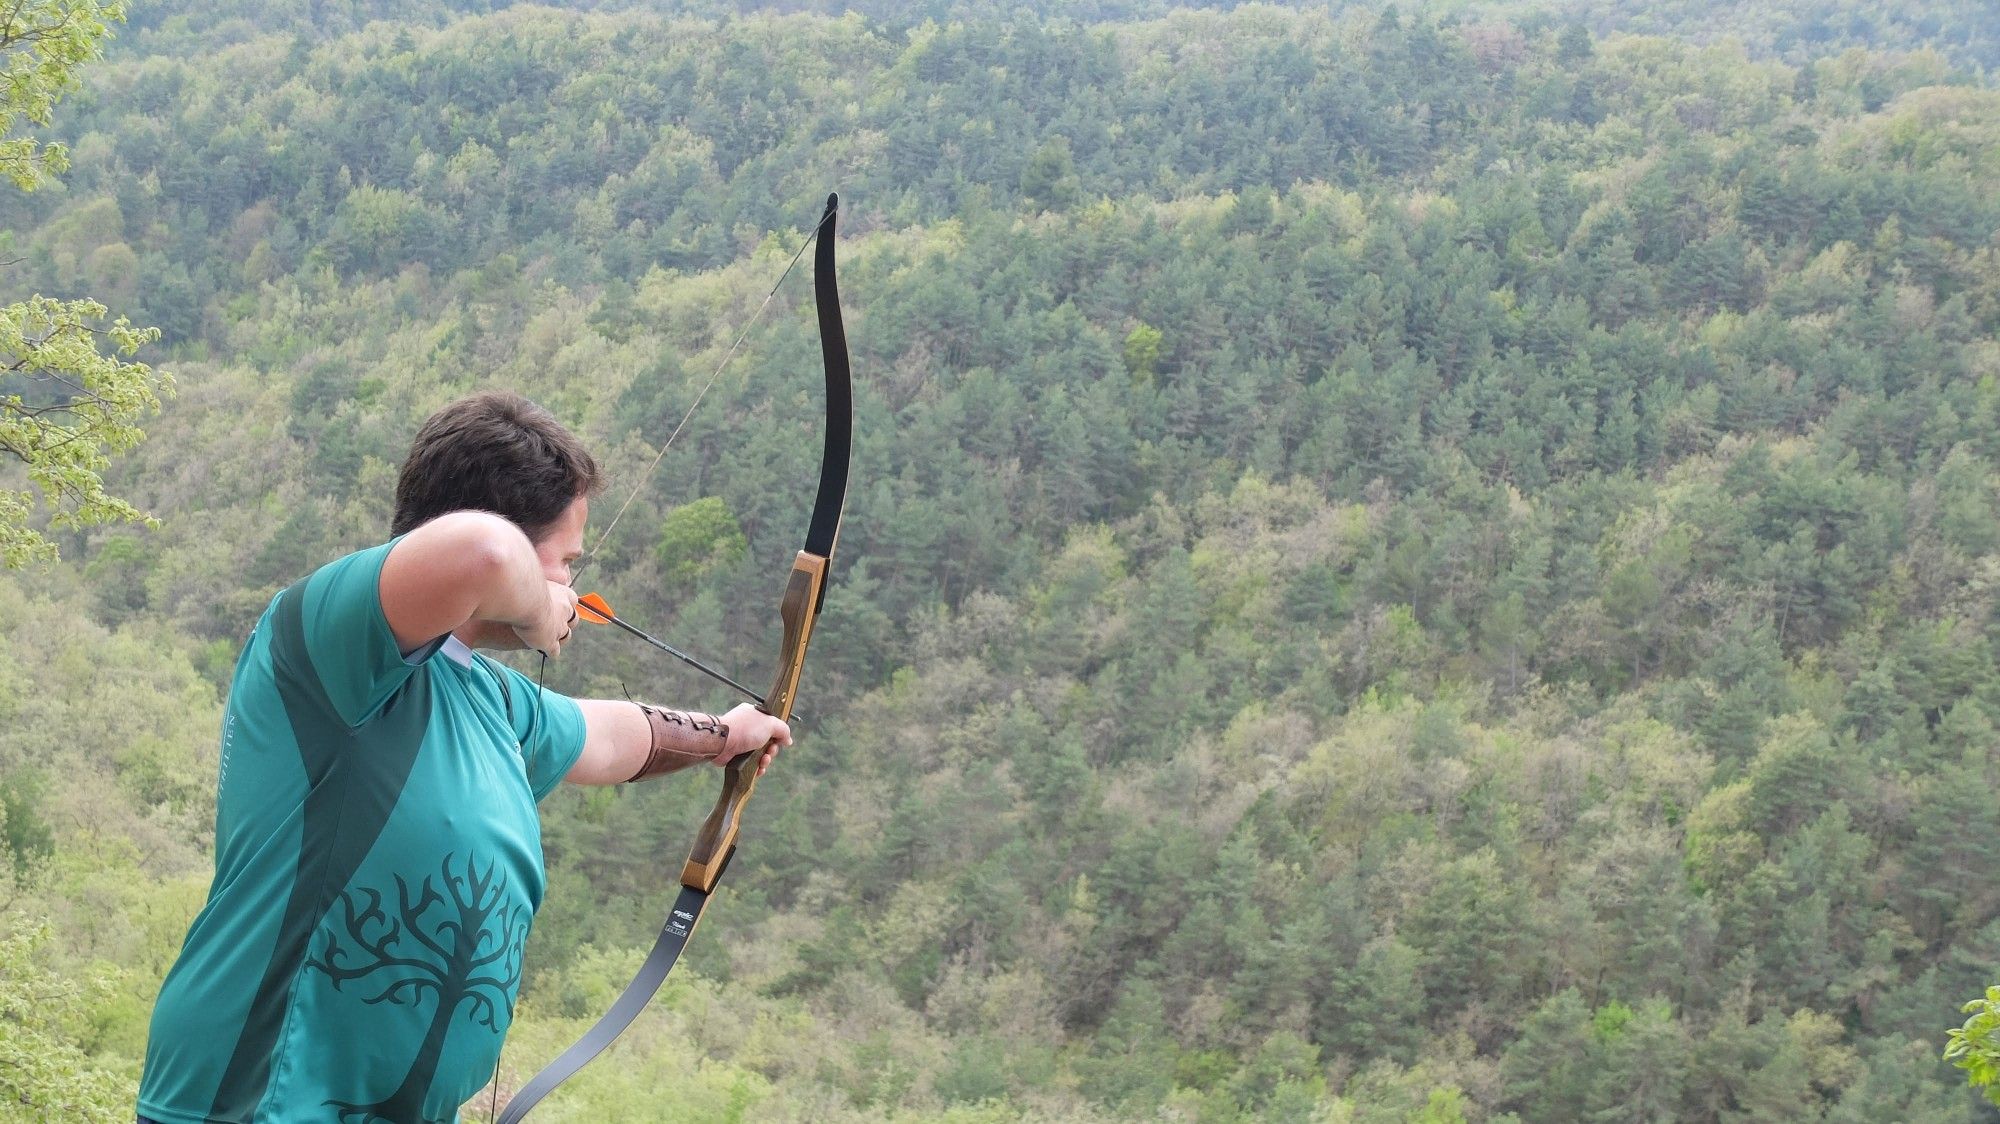 Clases de TIRO AL ARCO CON FLECHA para niños y adultos con AX Archery